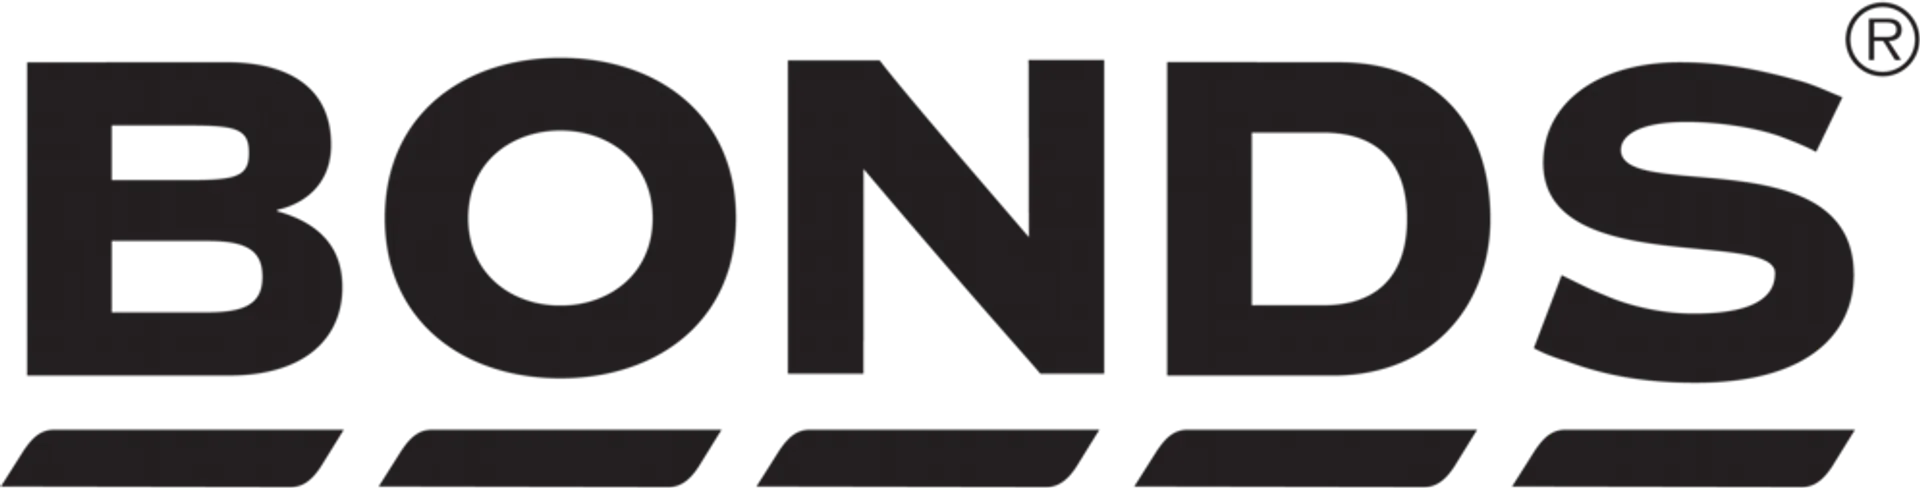 BONDS logo of current flyer